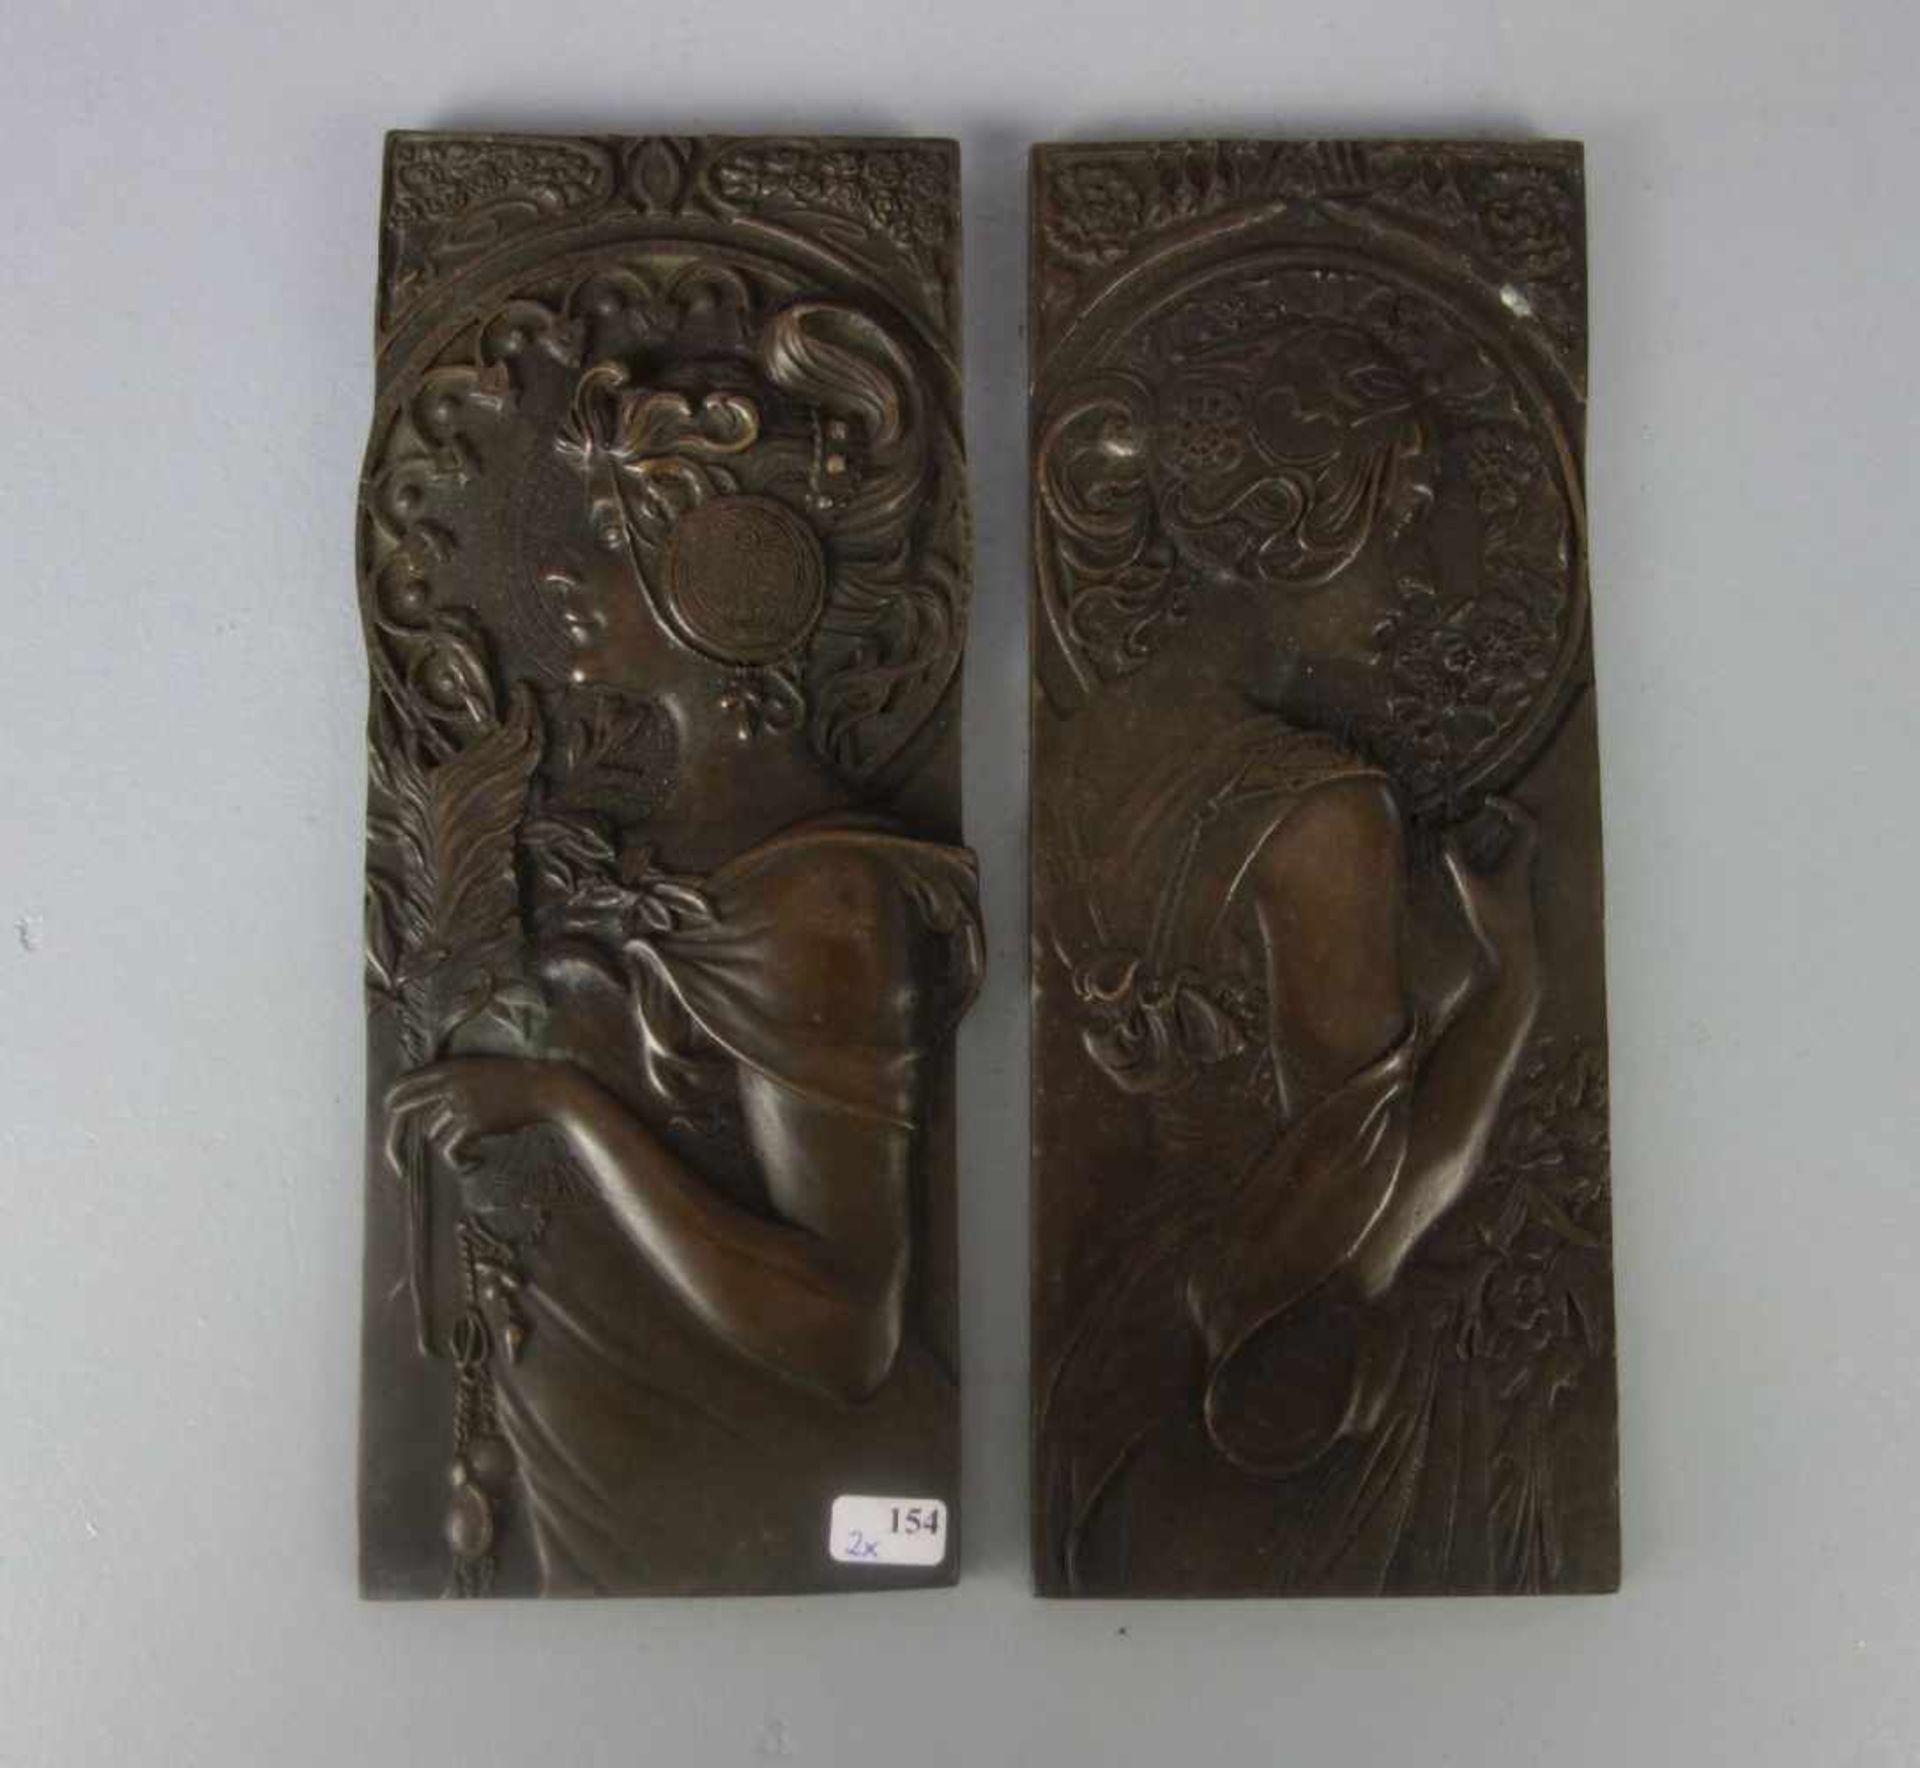 MUCHA, ALFONS (1860-1939), Bronzereliefs: "La Primavere" (Die Schlüsselblume) und "La Plume" (Die